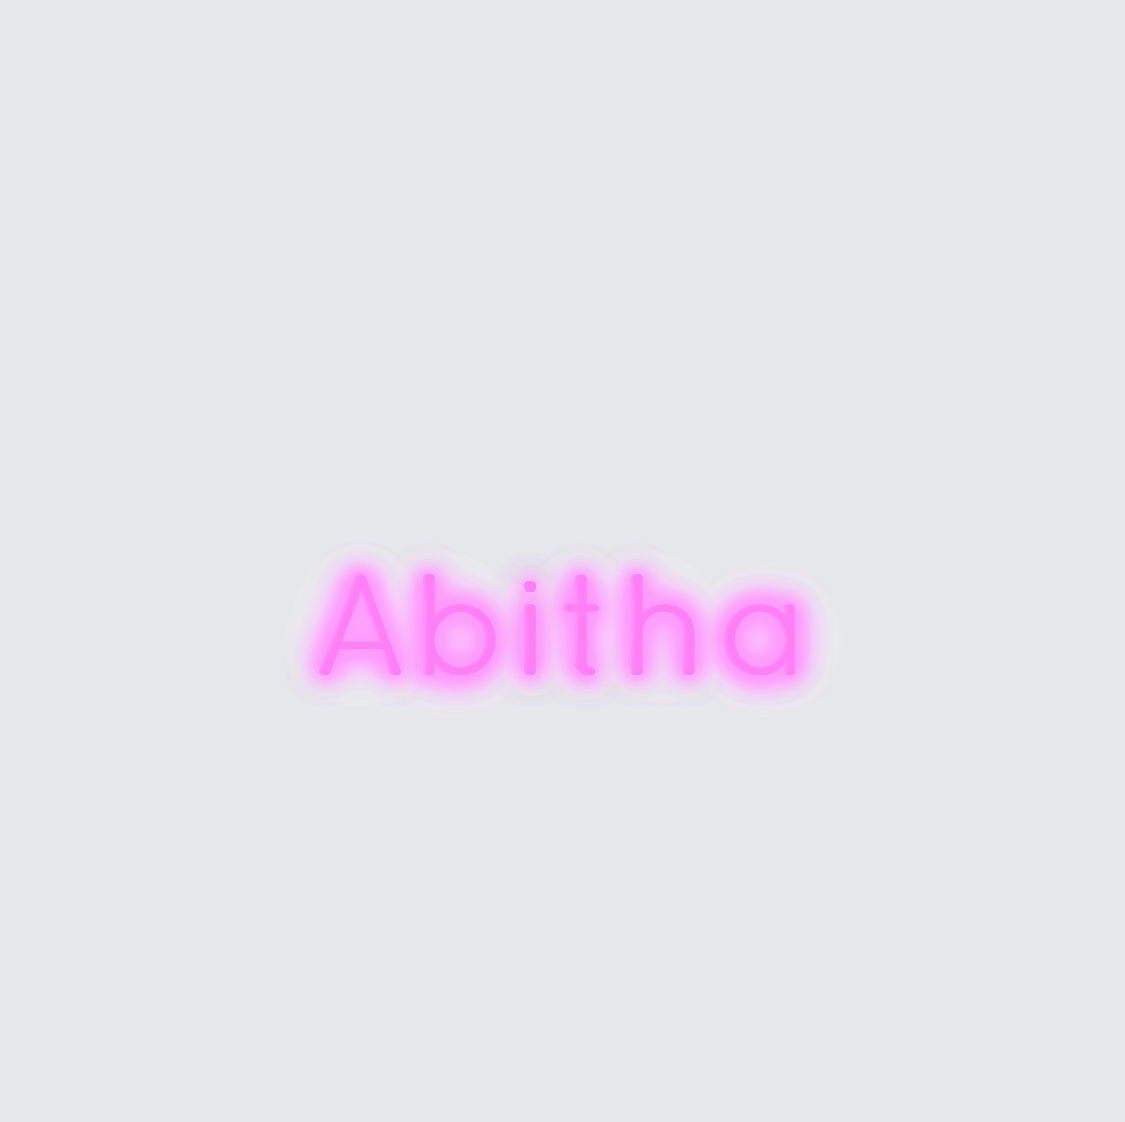 Custom neon sign - Abitha